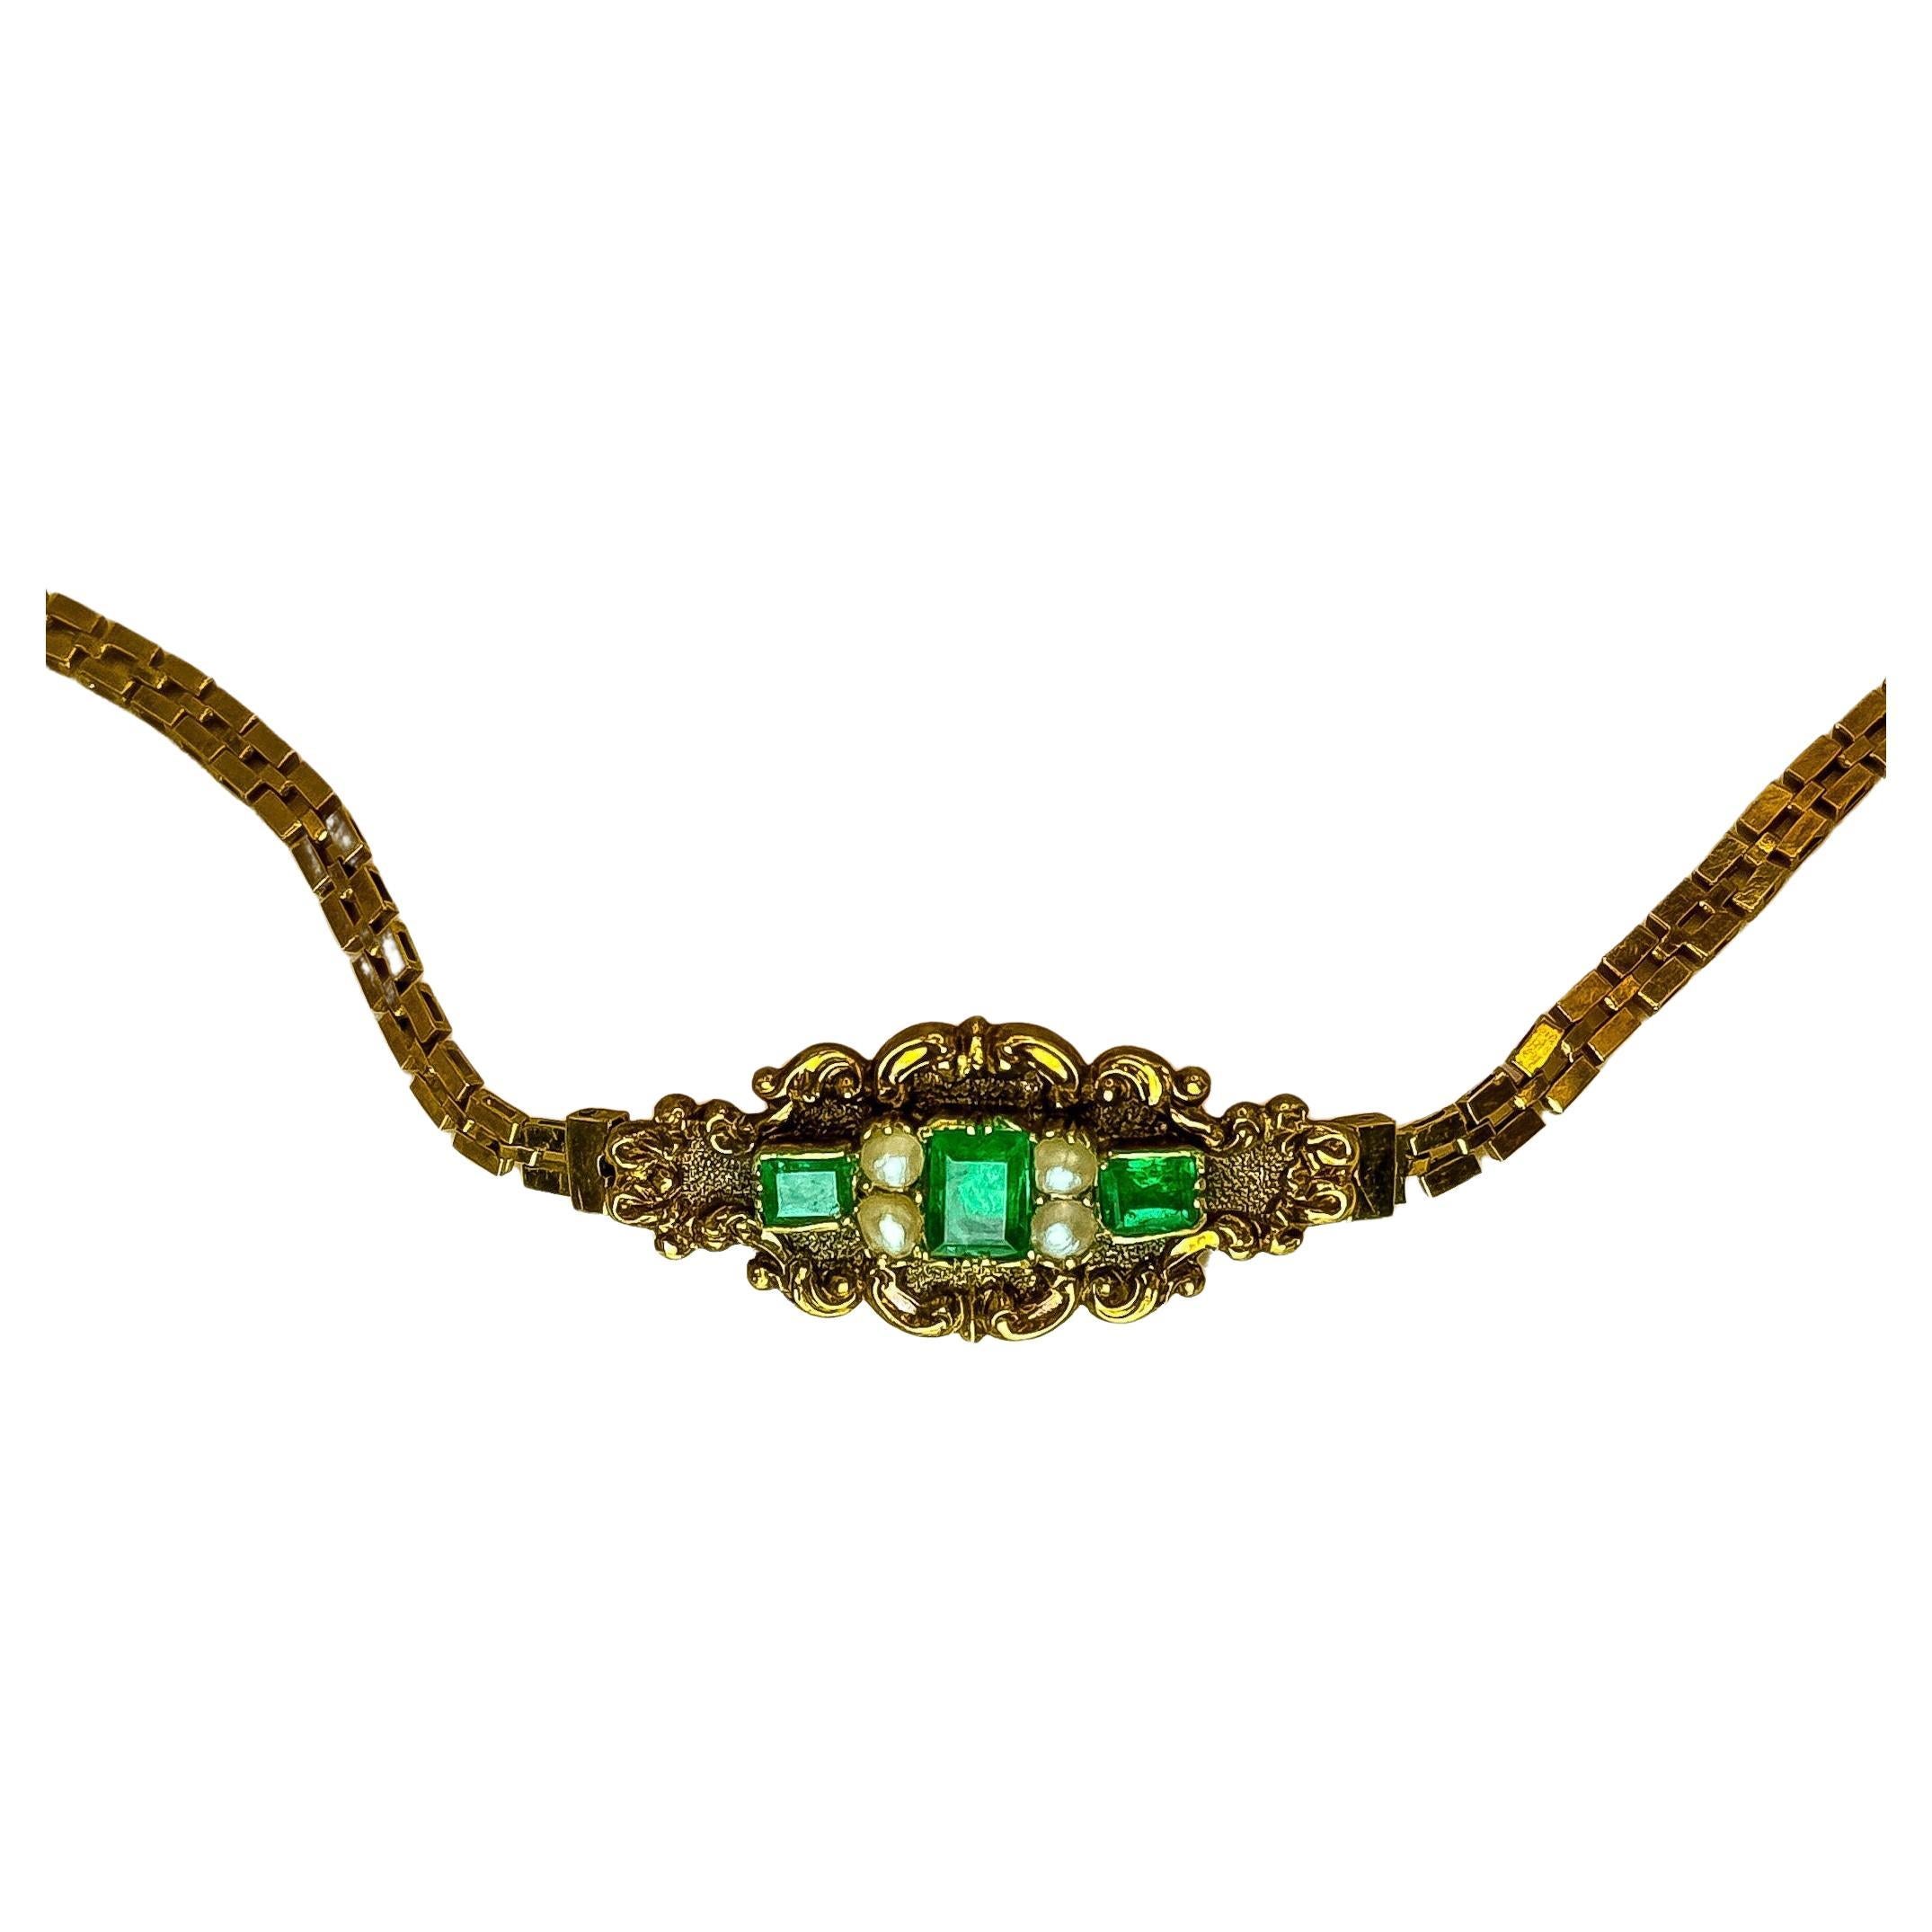 Antikes Armband im Vintage-Stil aus 18 Karat Gold mit natürlichen Smaragden.
Gönnen Sie sich den Glanz der Geschichte mit diesem prächtigen Armband, einer Hommage an die luxuriöse Handwerkskunst der viktorianischen Ära. Dieses atemberaubende Stück